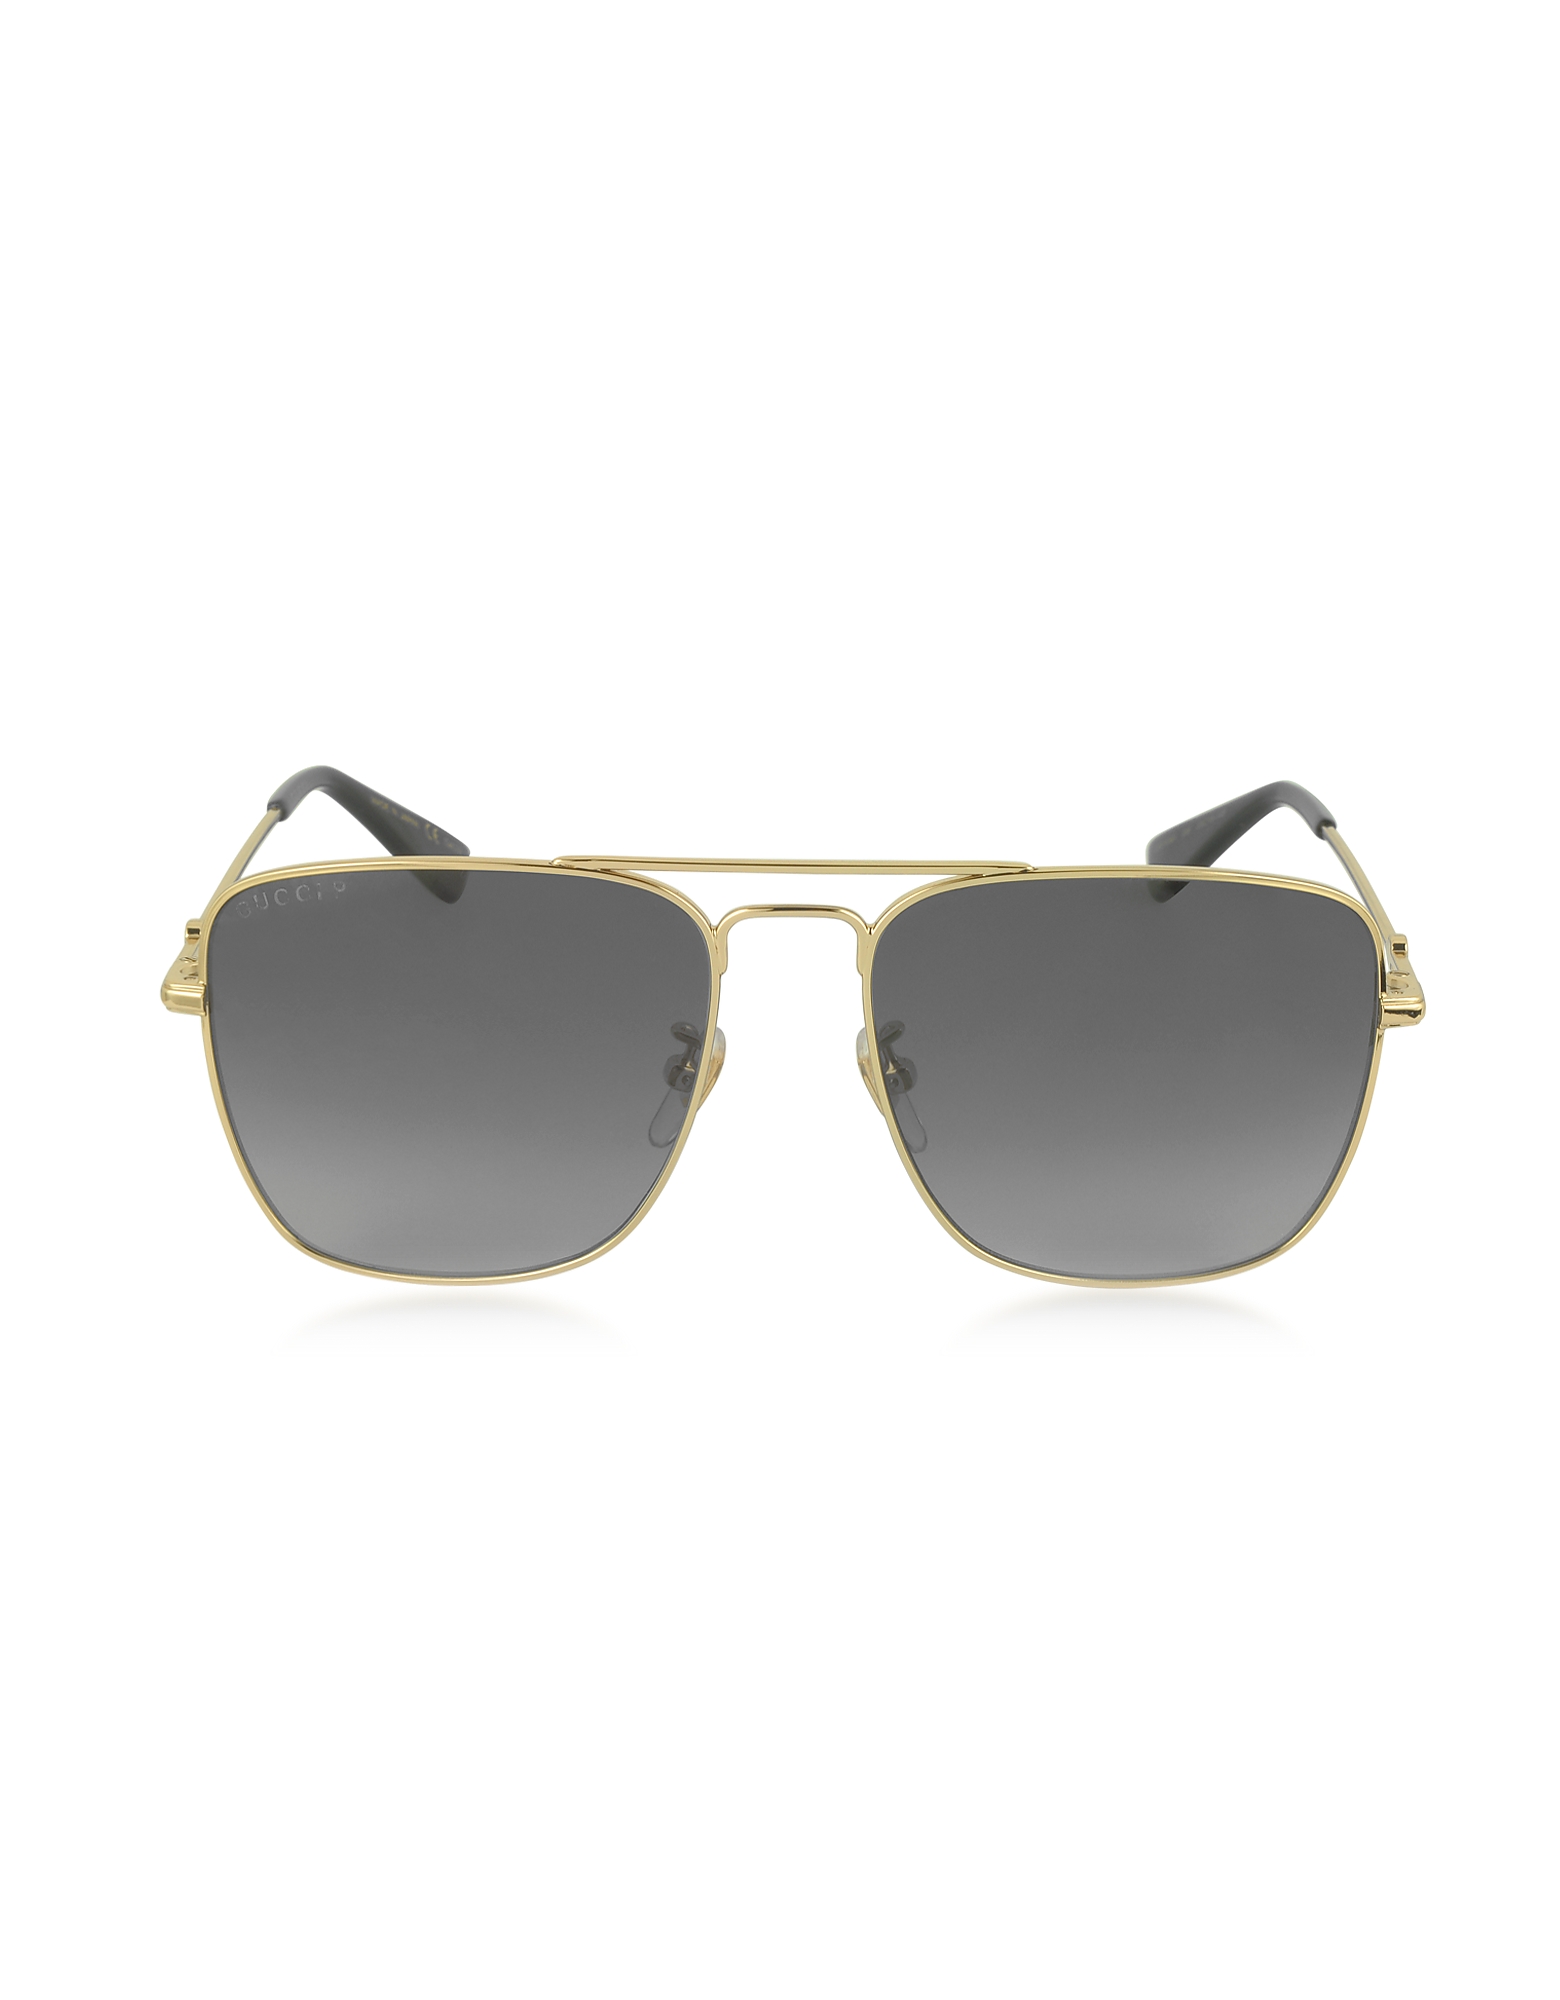 Gucci GG0108S 006 Gold Metal Square Aviator Men's Polarized Sunglasses